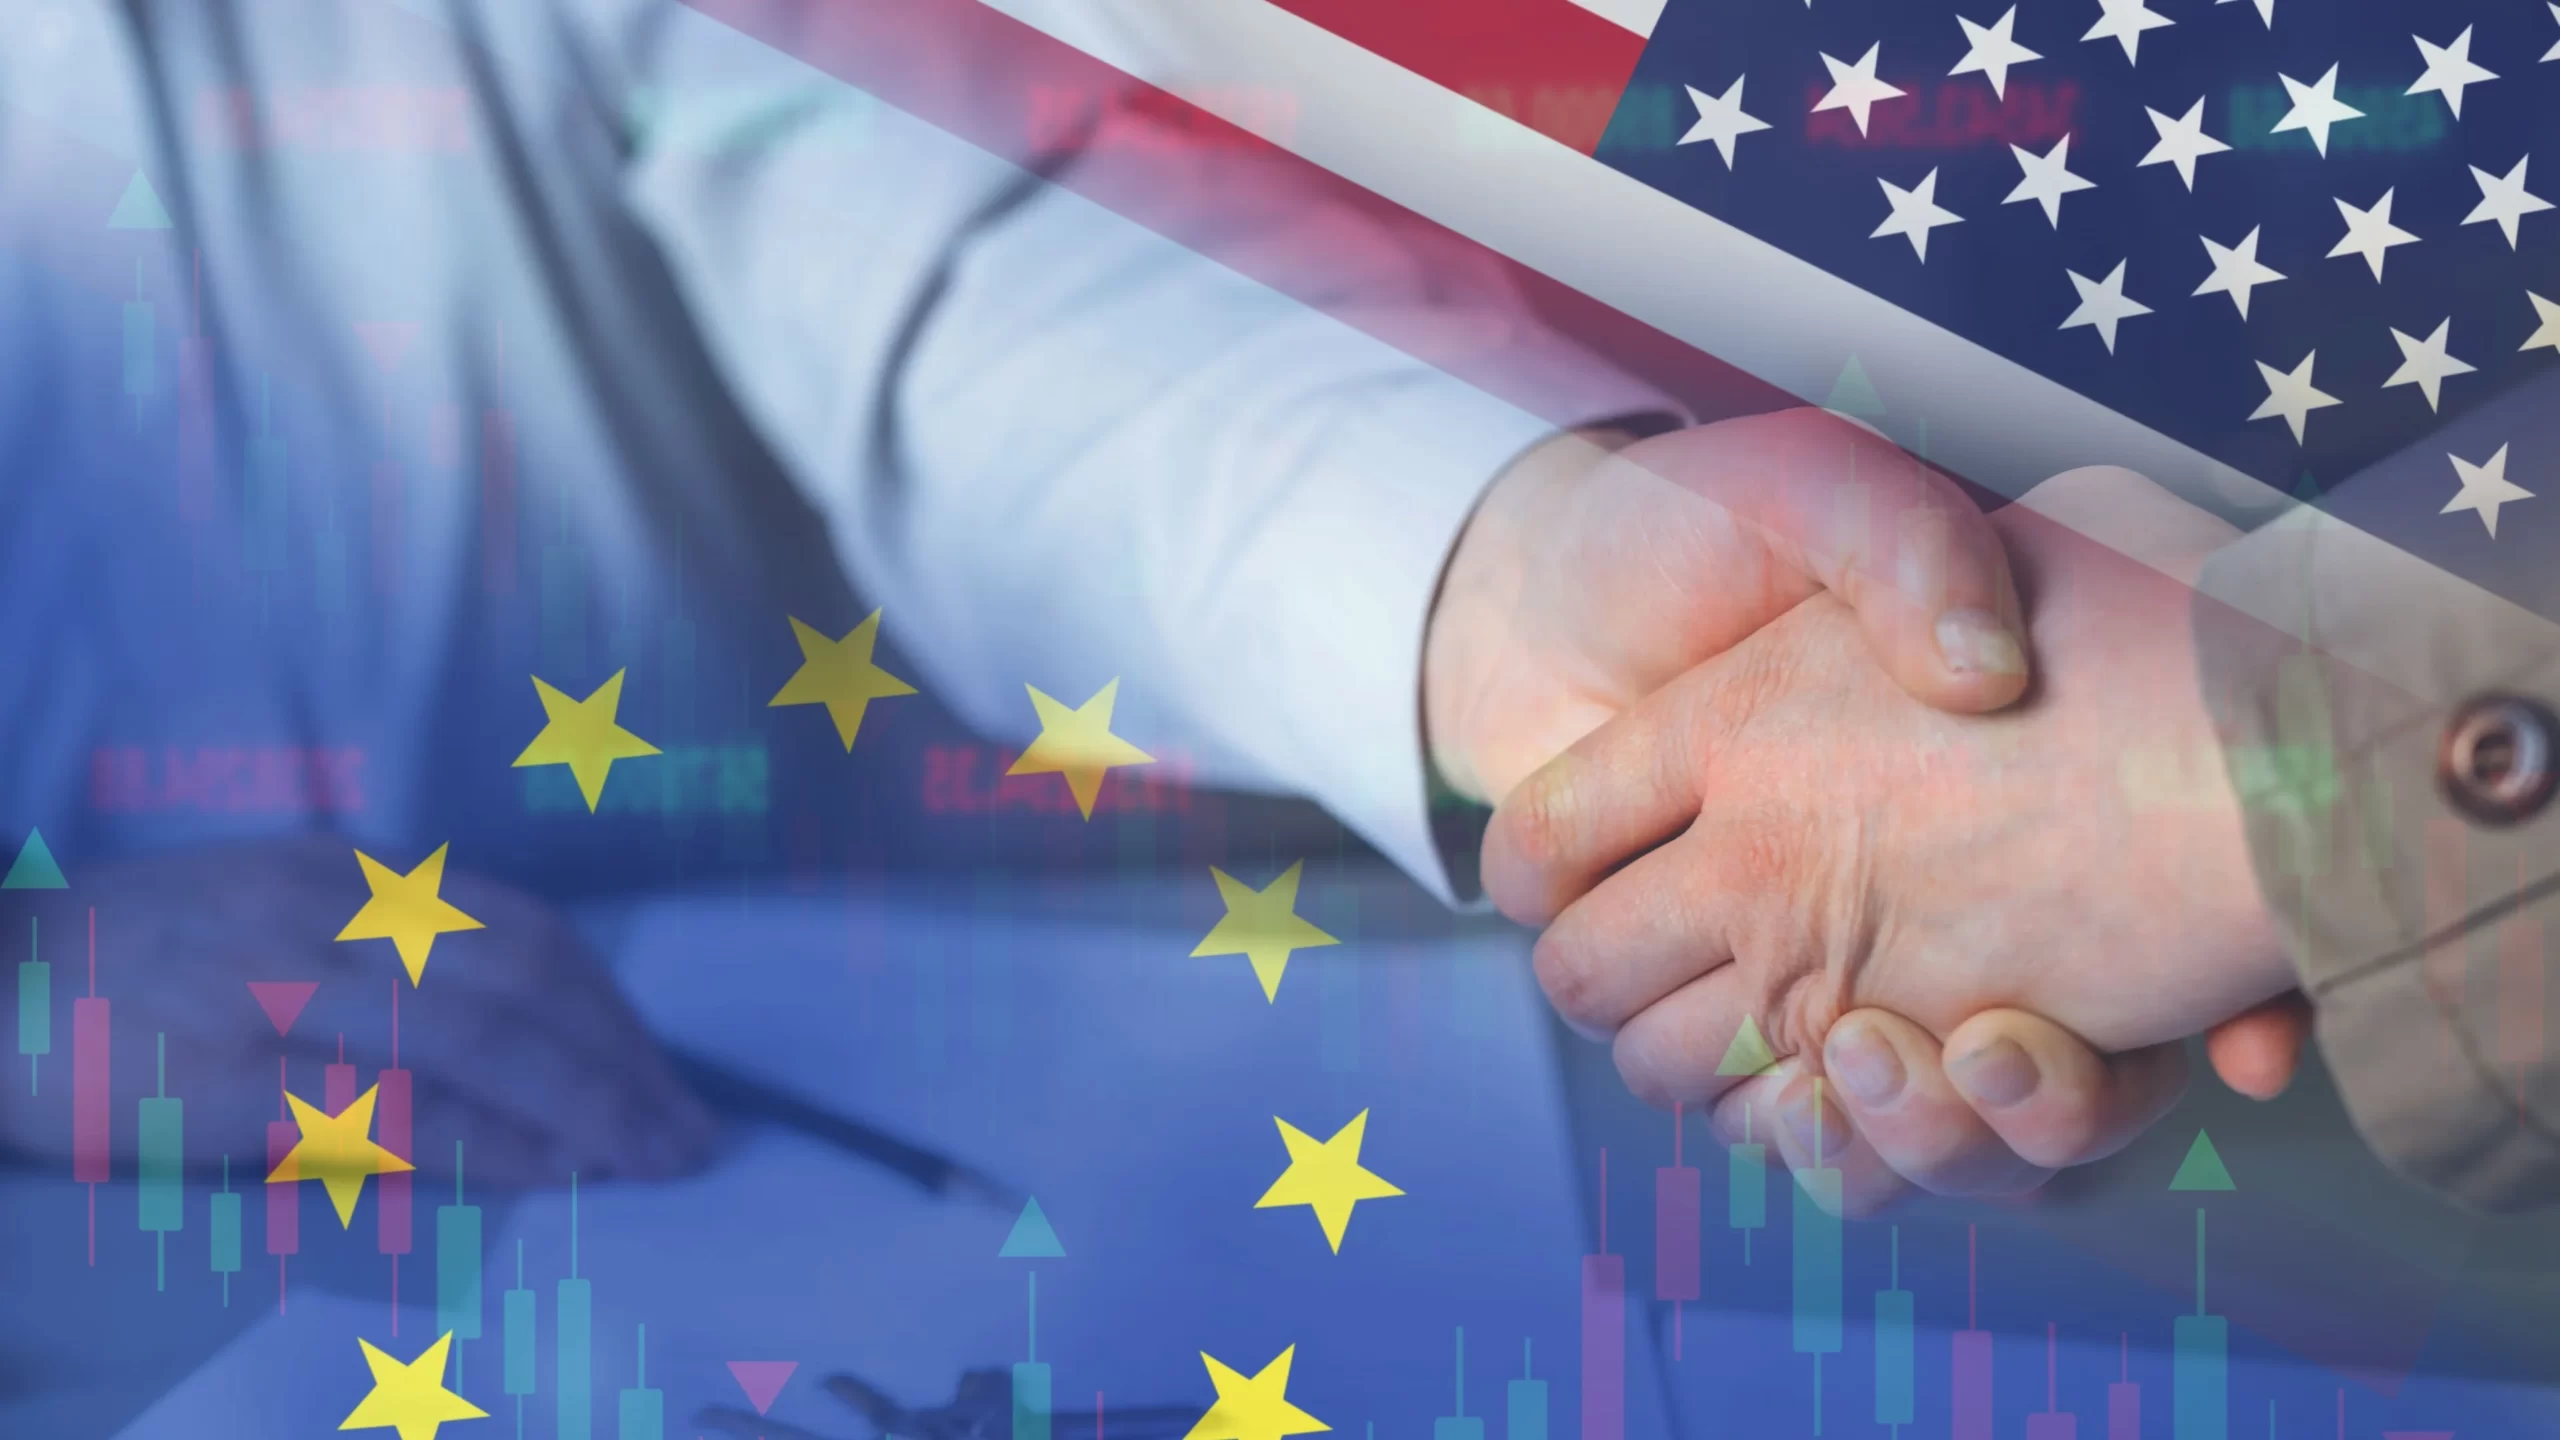 Accordo USA-UE per il trasferimento e la circolazione sicura dei flussi di dati